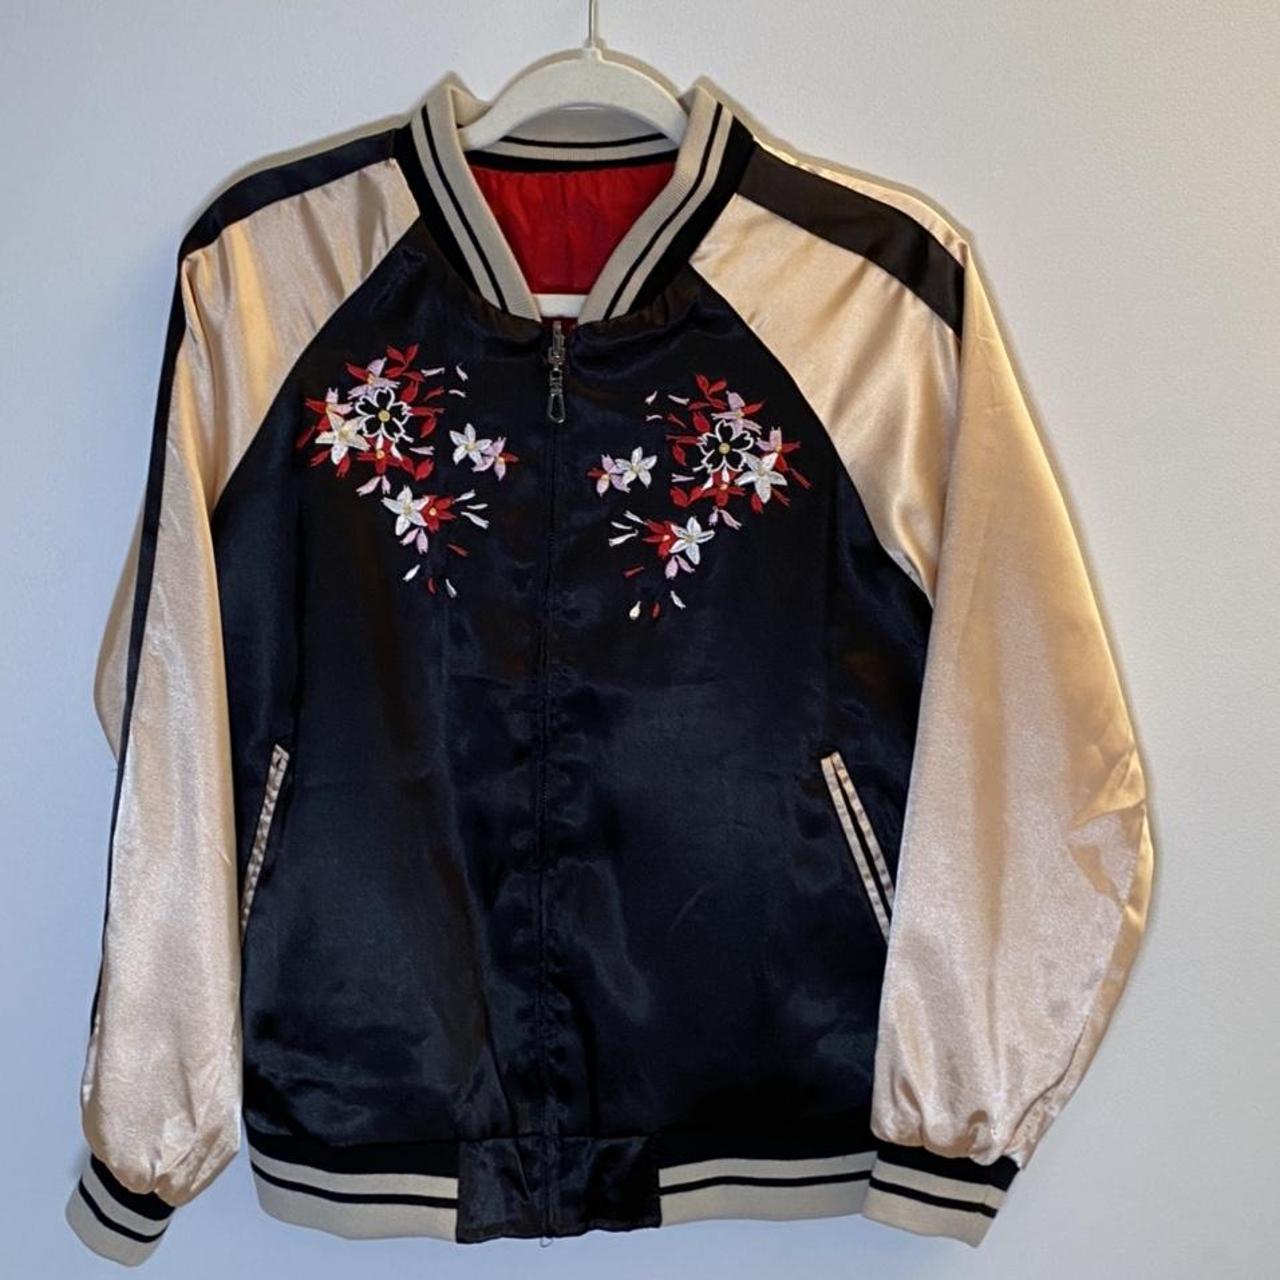 Satin embroidered reversible bomber jacket. Both... - Depop